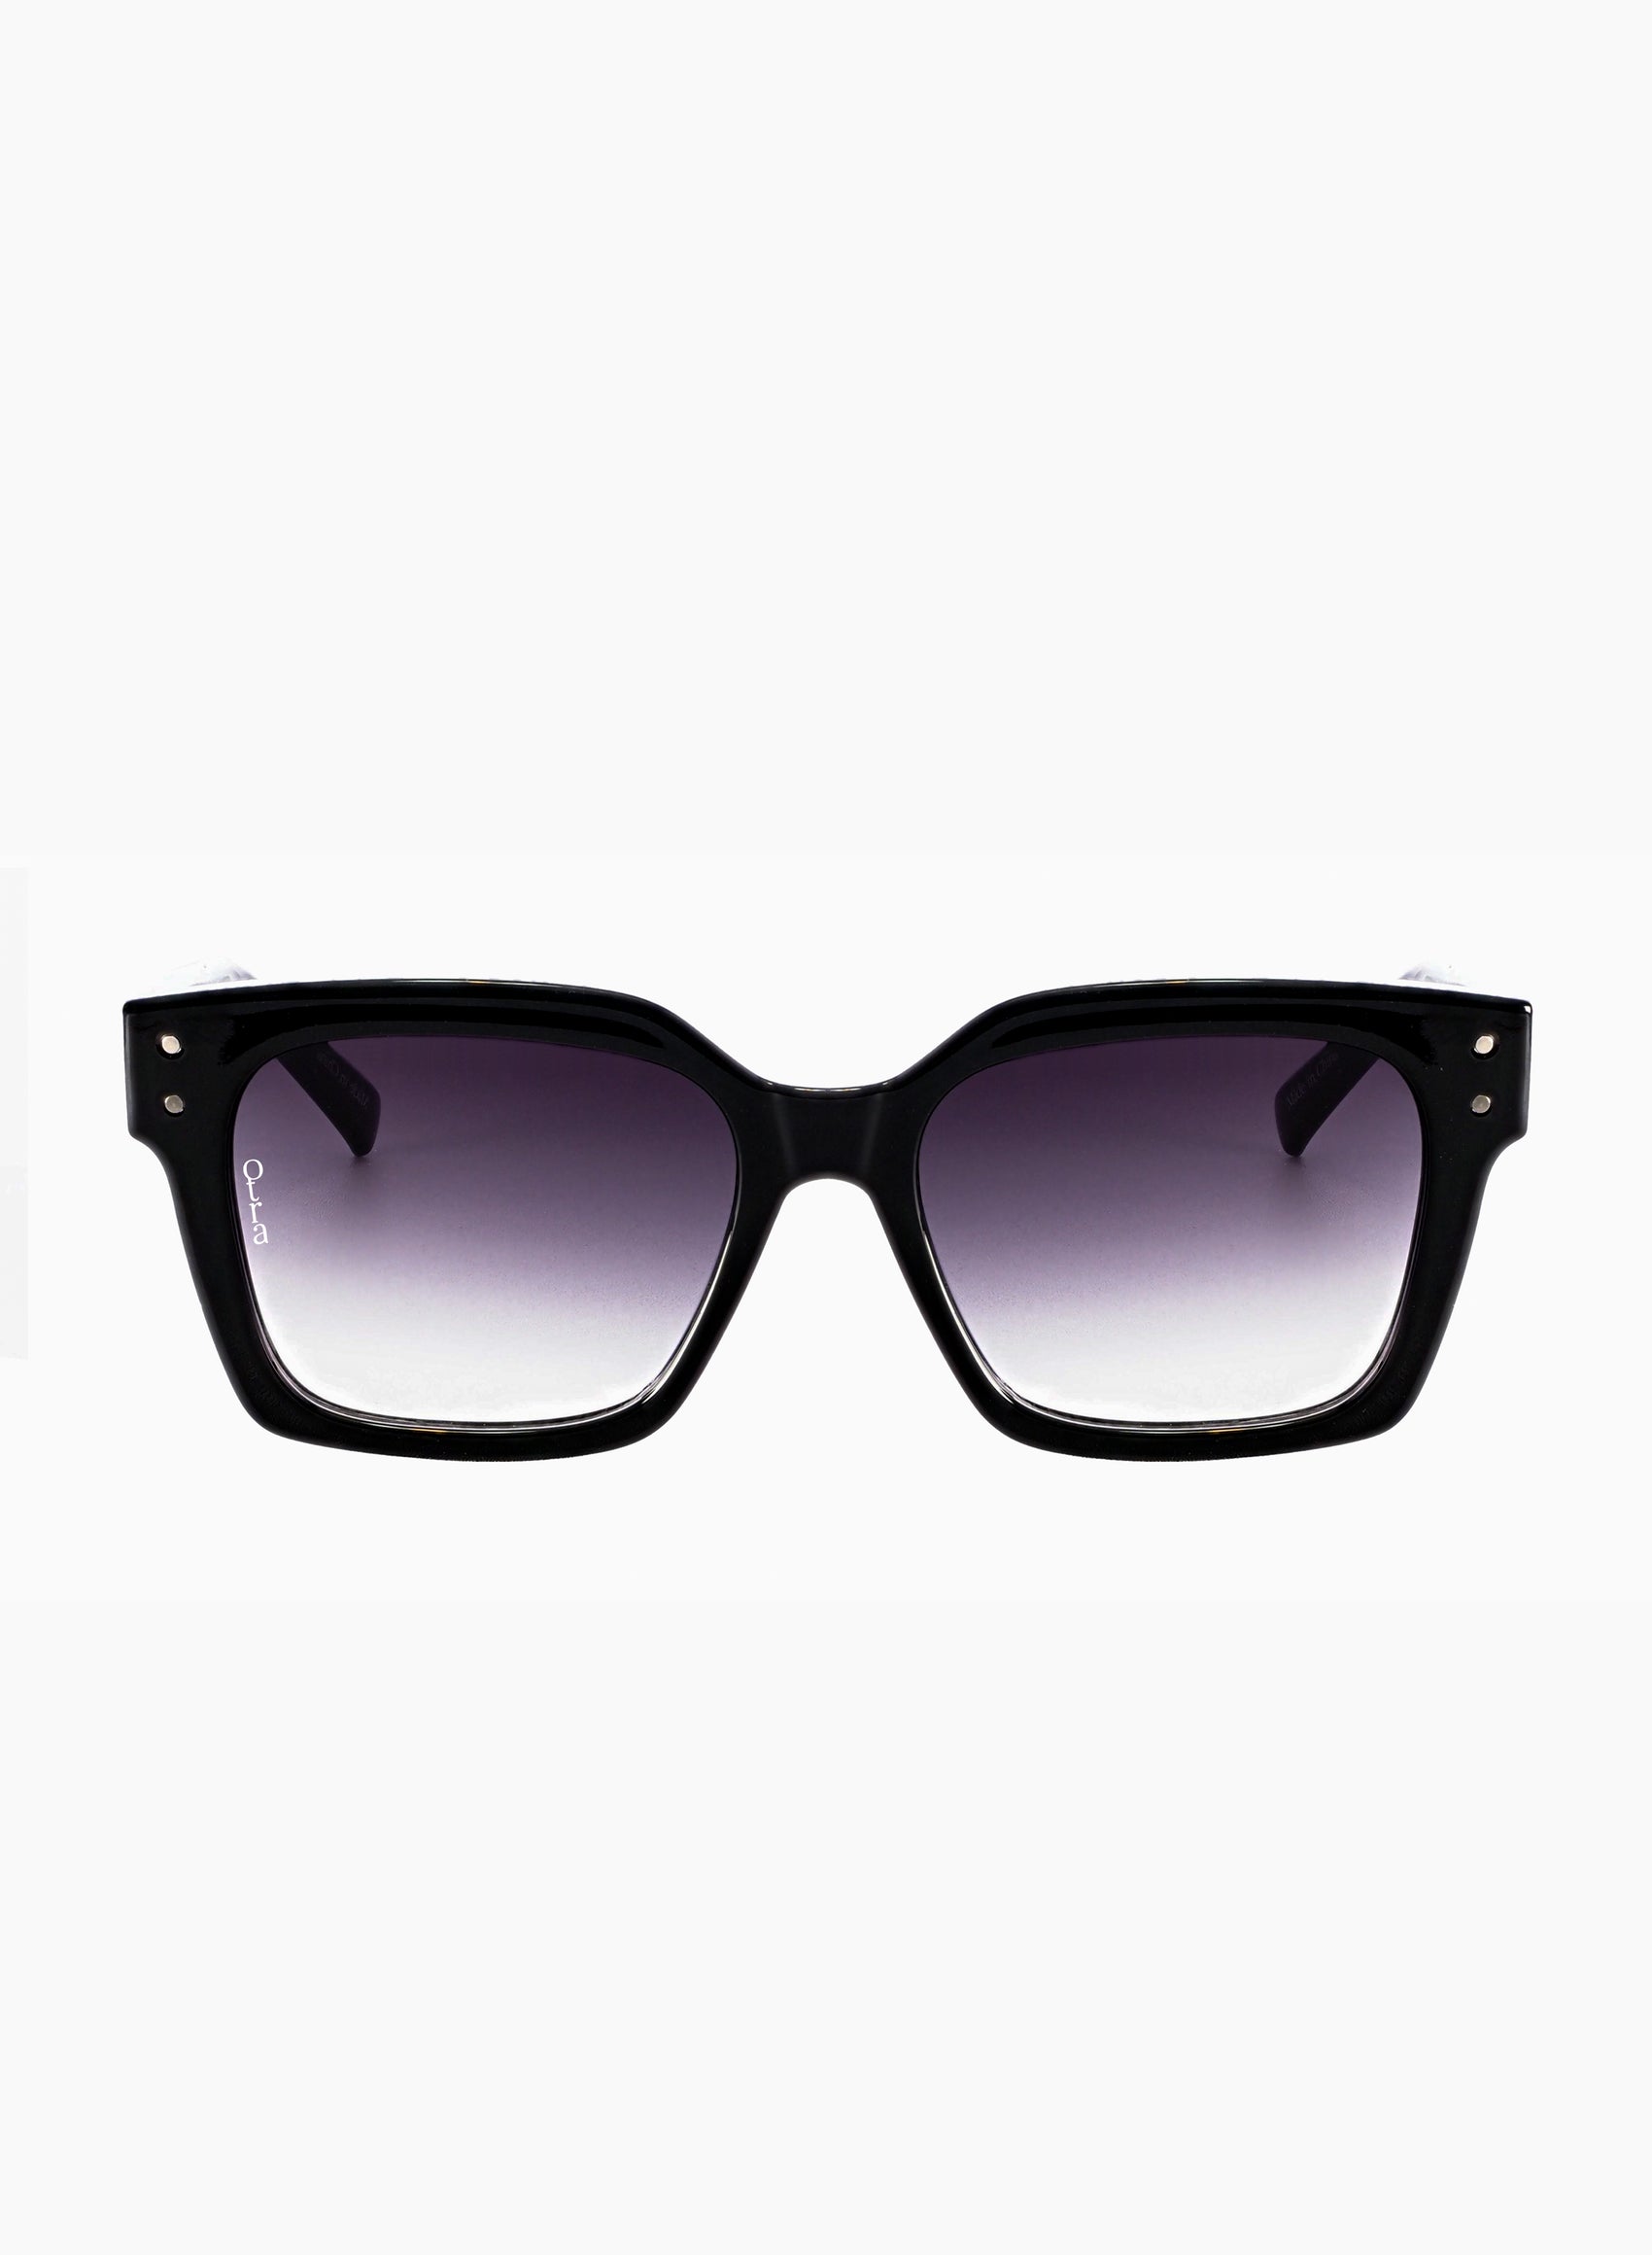 Ora square sunglasses in black